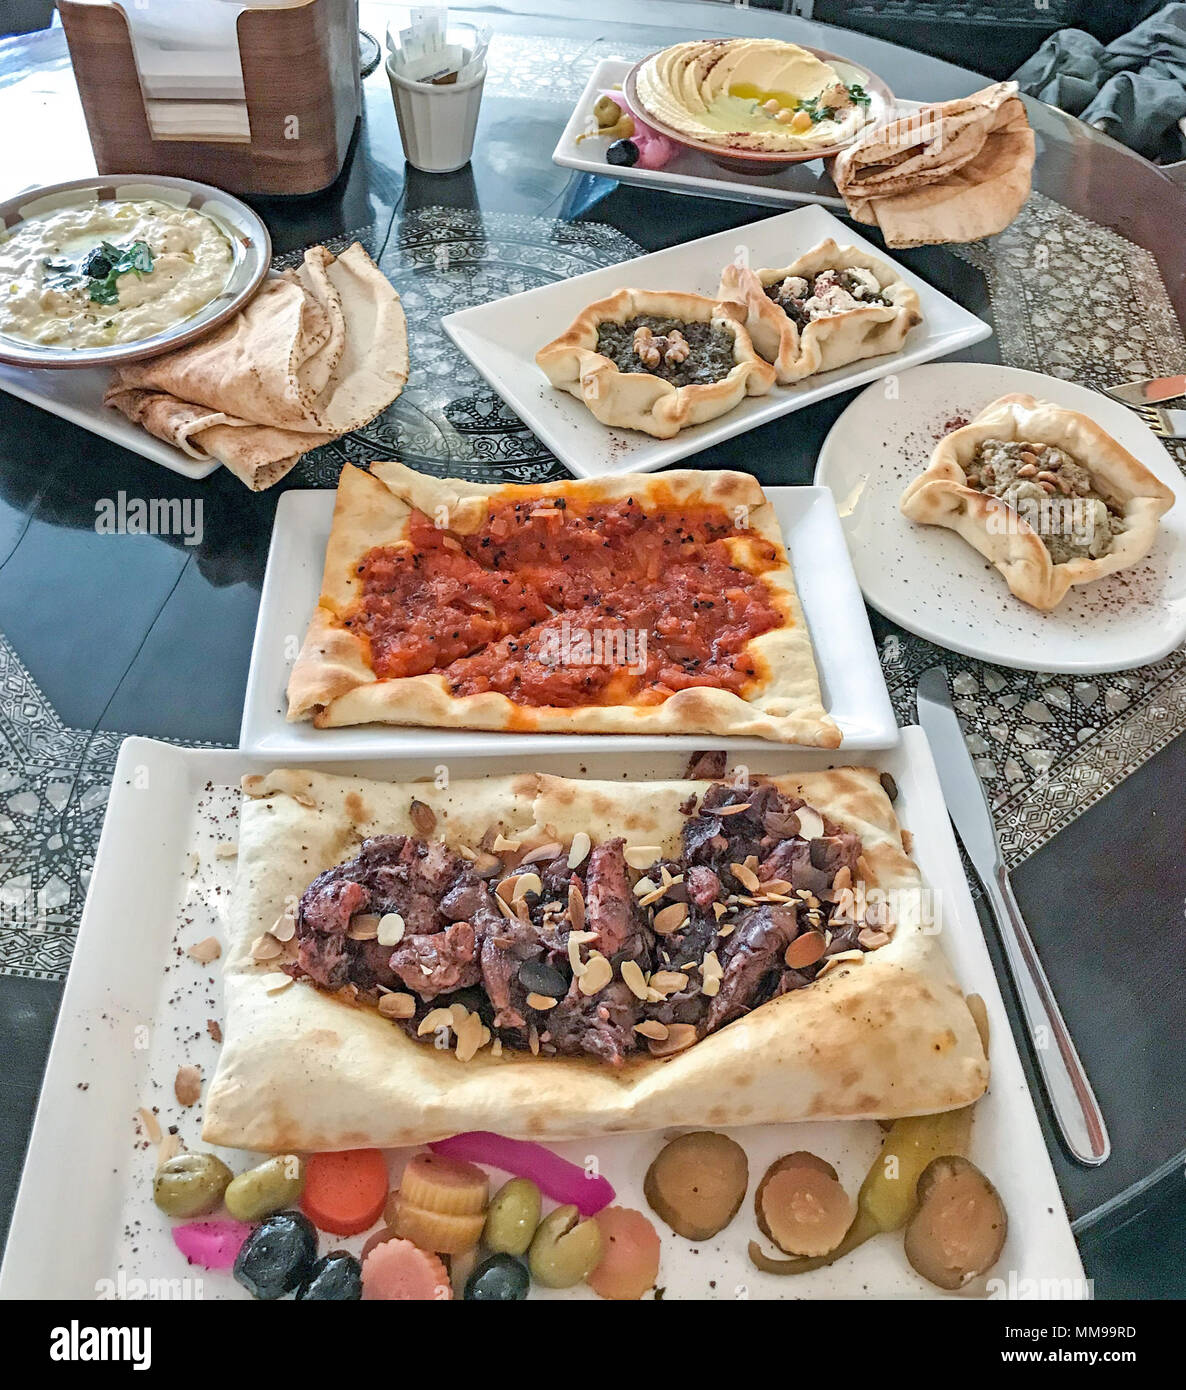 Une variété d'aliments et des pâtisseries syriennes, moyen-orientale Banque D'Images